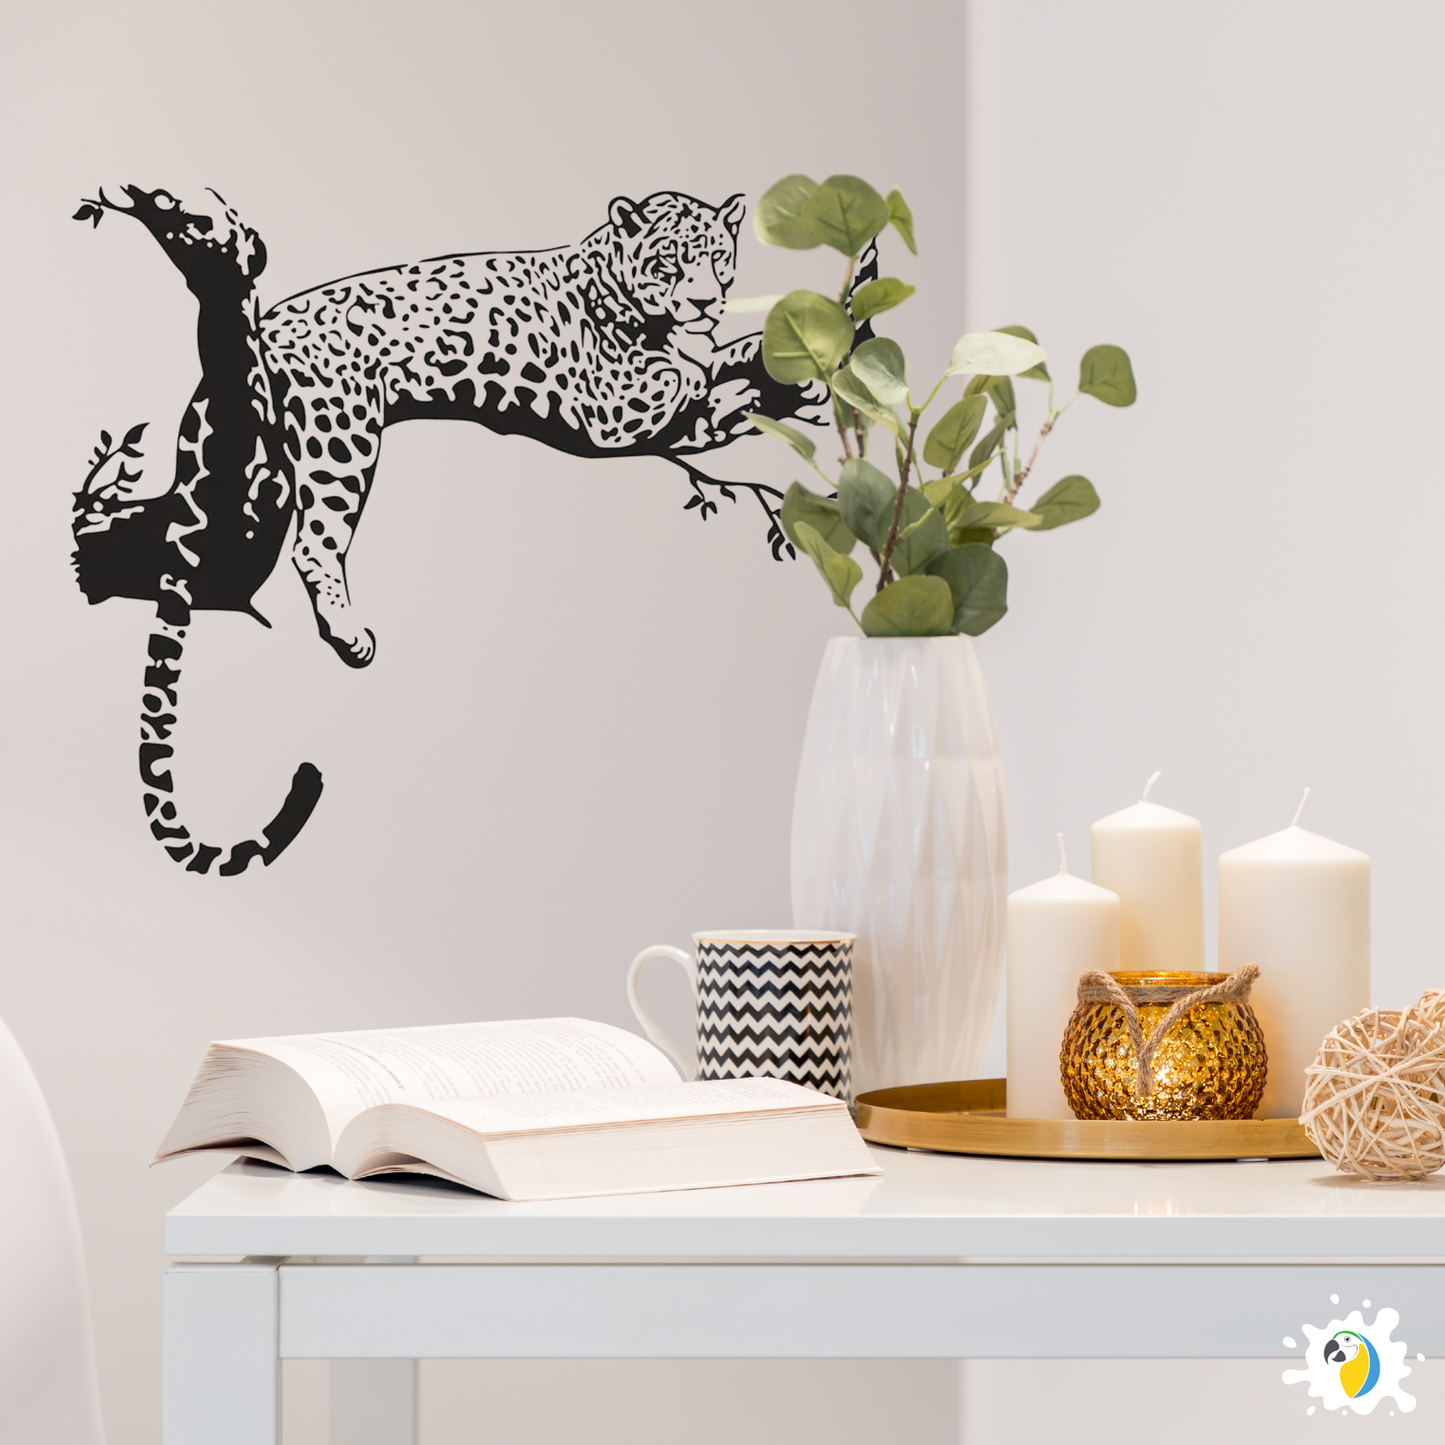 Brazil Pantanal Jaguar Wall Sticker, Cheetah Panther Animal Decal For Home Decor • Papagaio Studio Shop